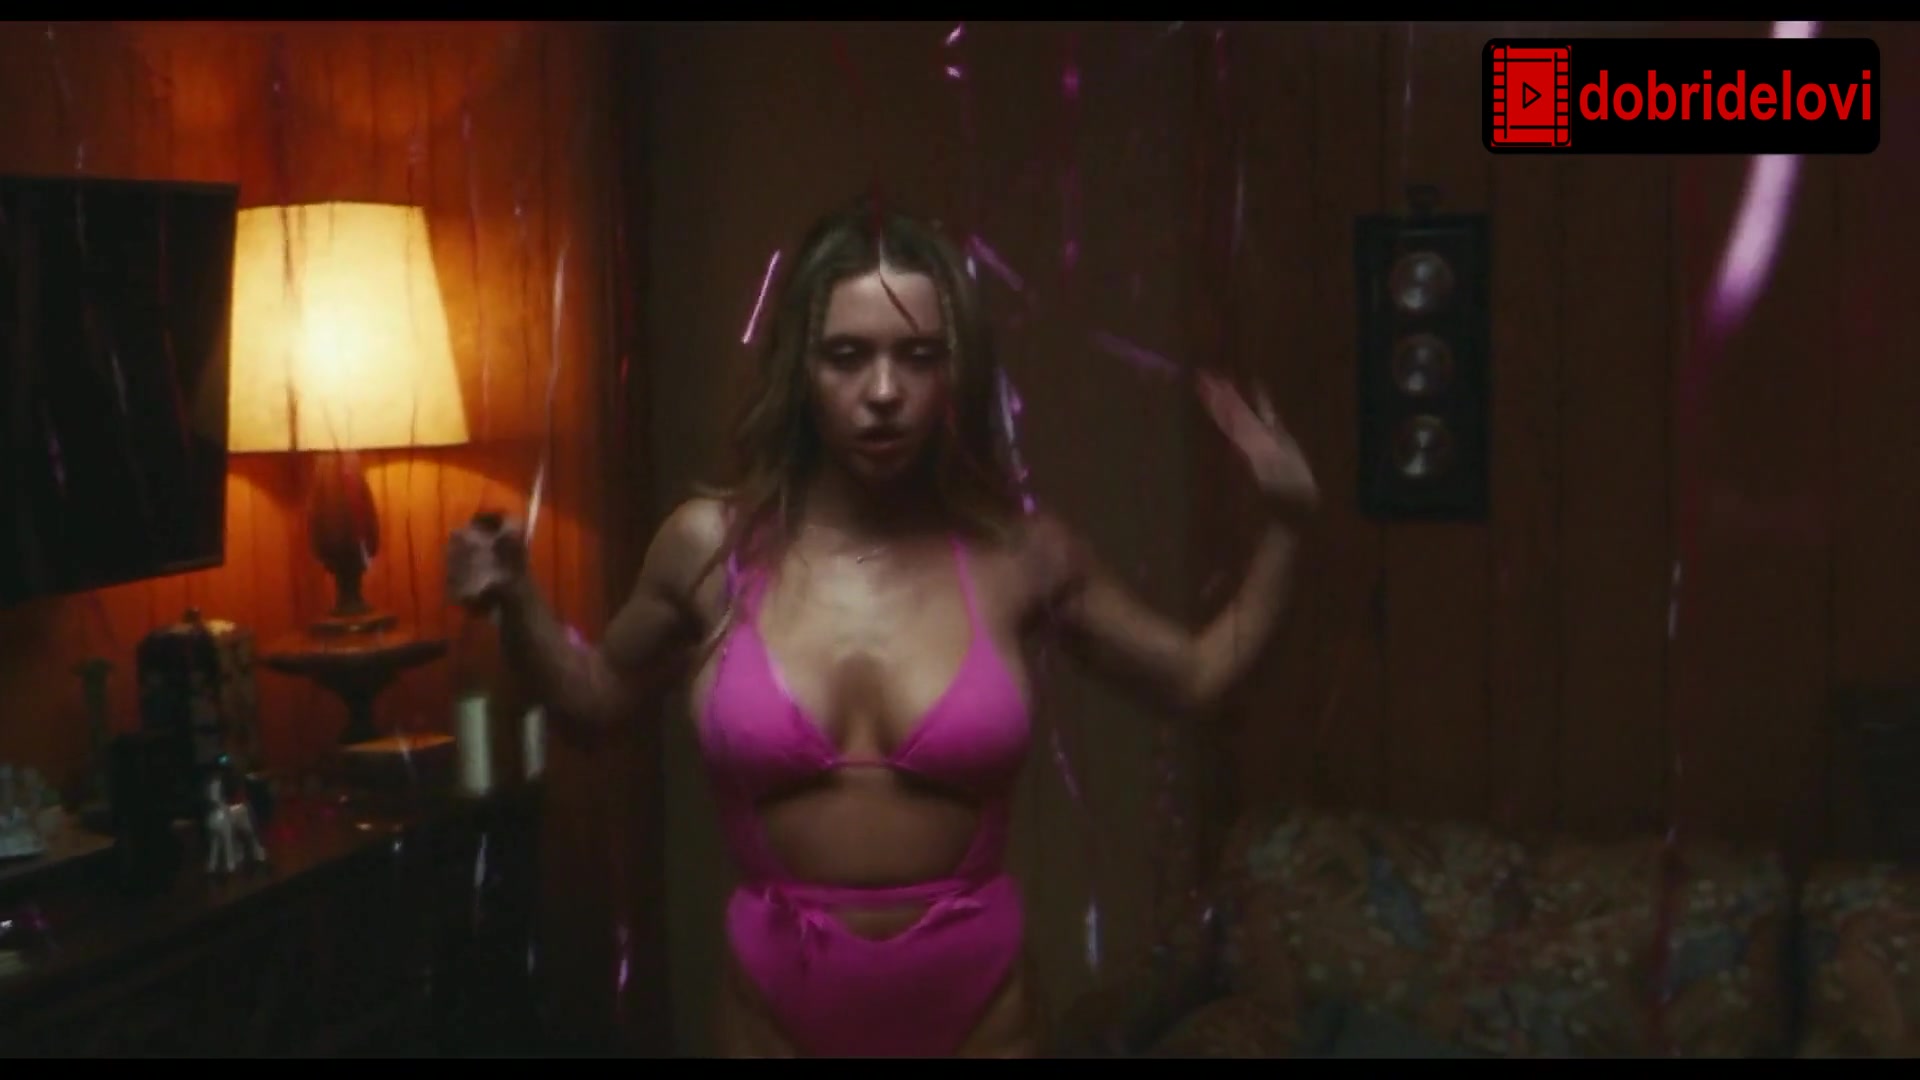 Sydney Sweeney dancing drunk in pink lingerie scene from Euphoria